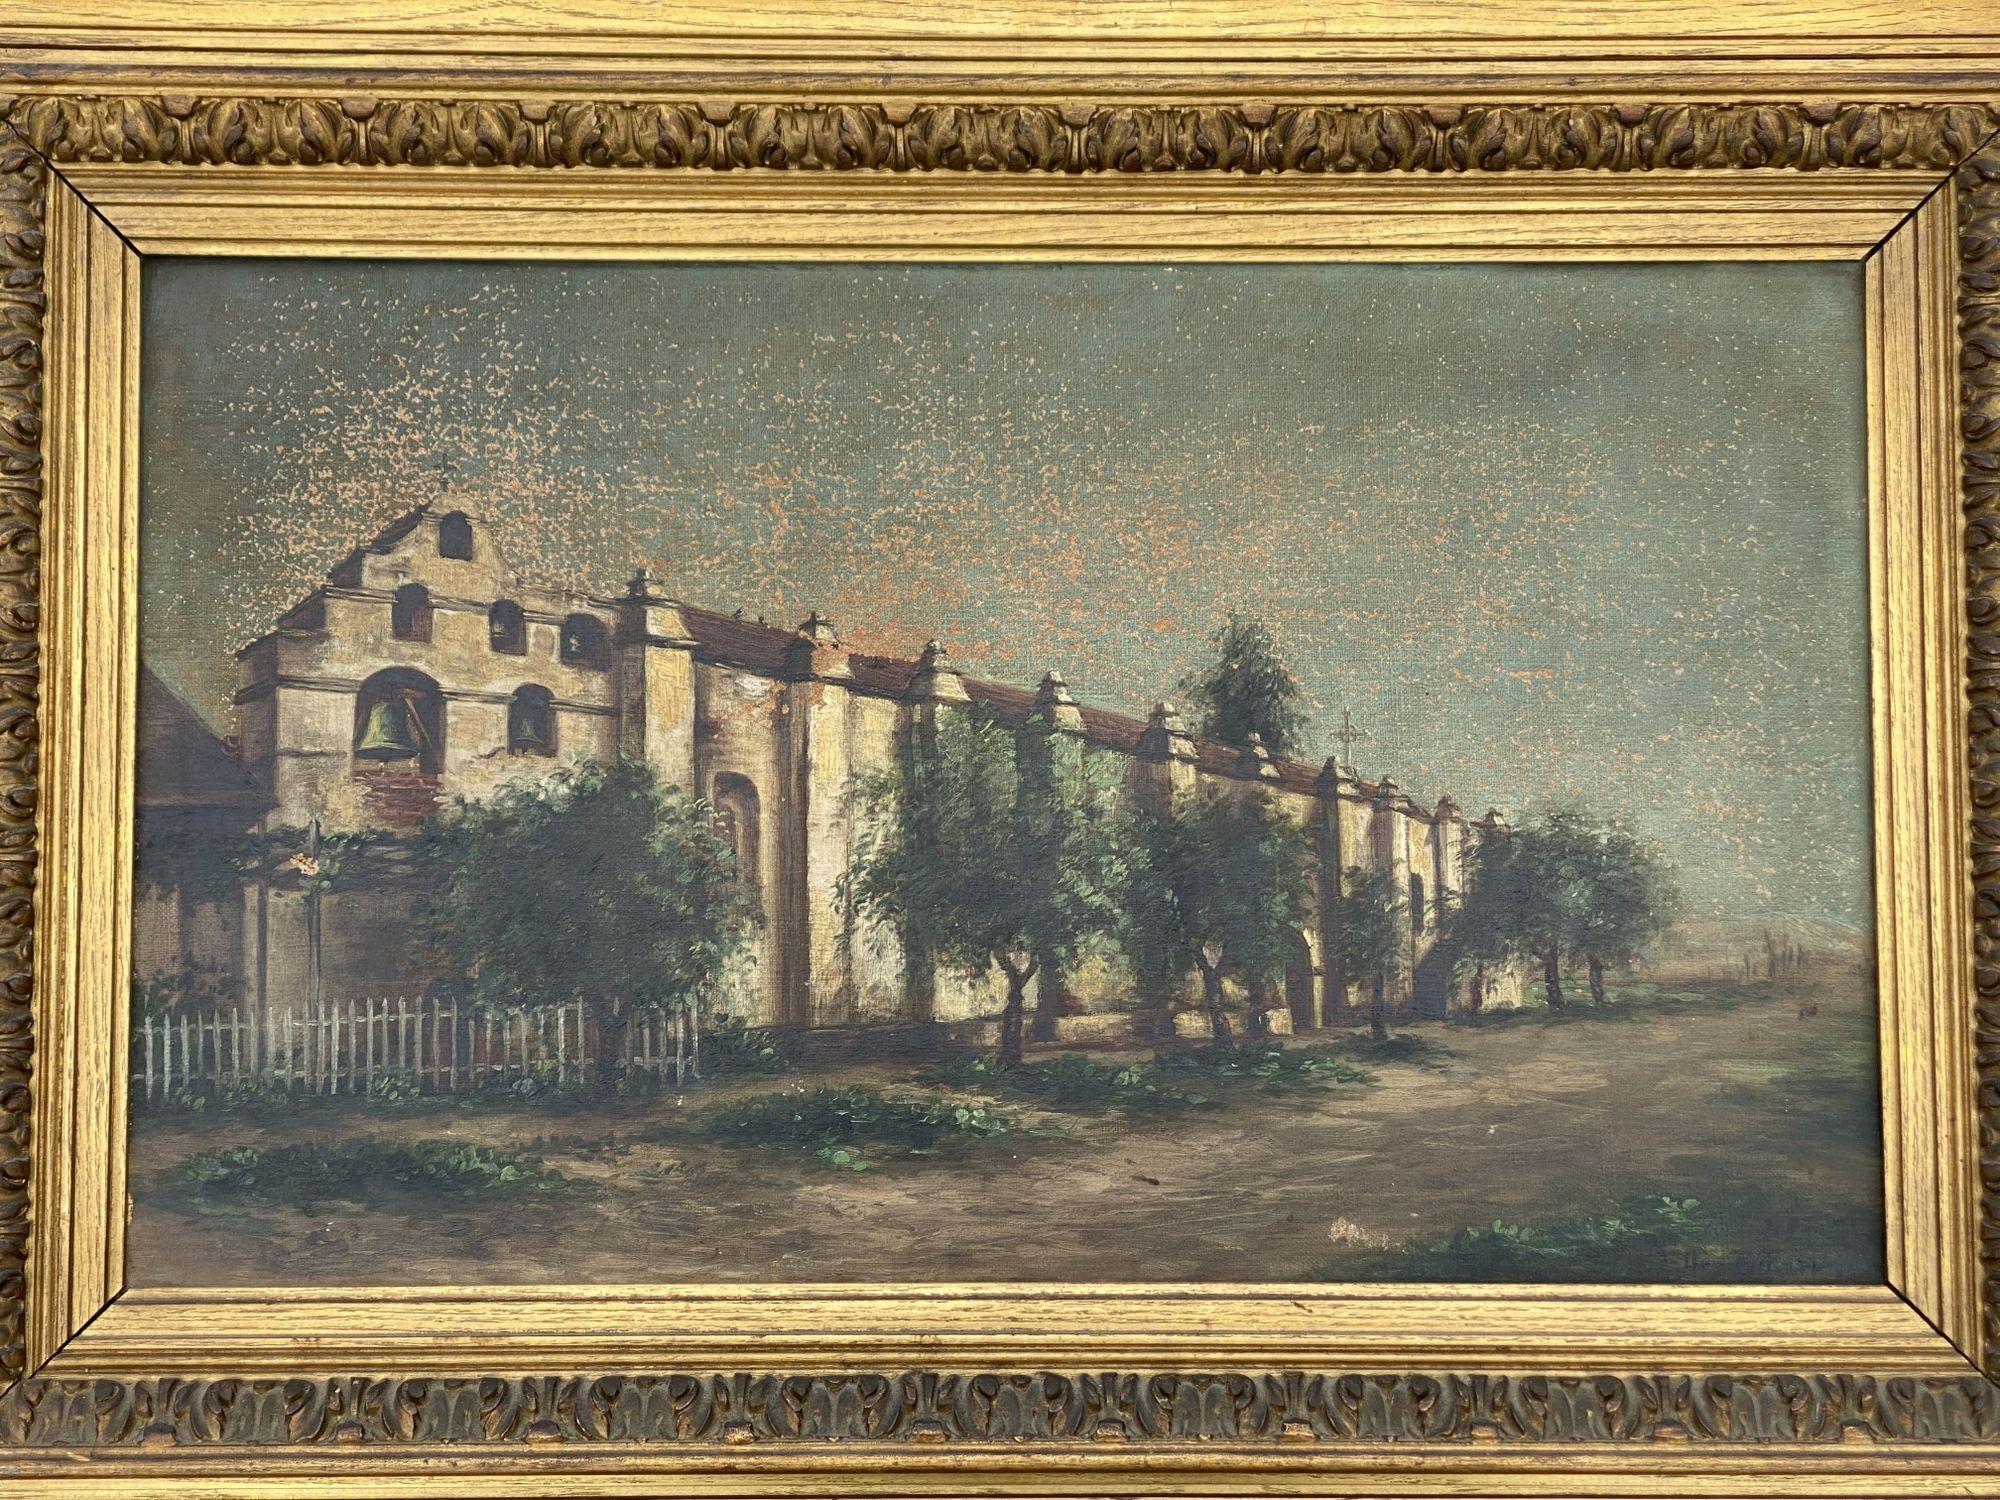 Peinture à l'huile sur toile de la fin de l'époque victorienne, dans son cadre d'origine, réalisée par Ellen B. Farr et représentant la mission San Gabriel de Pasadena, en Californie.

Signé 